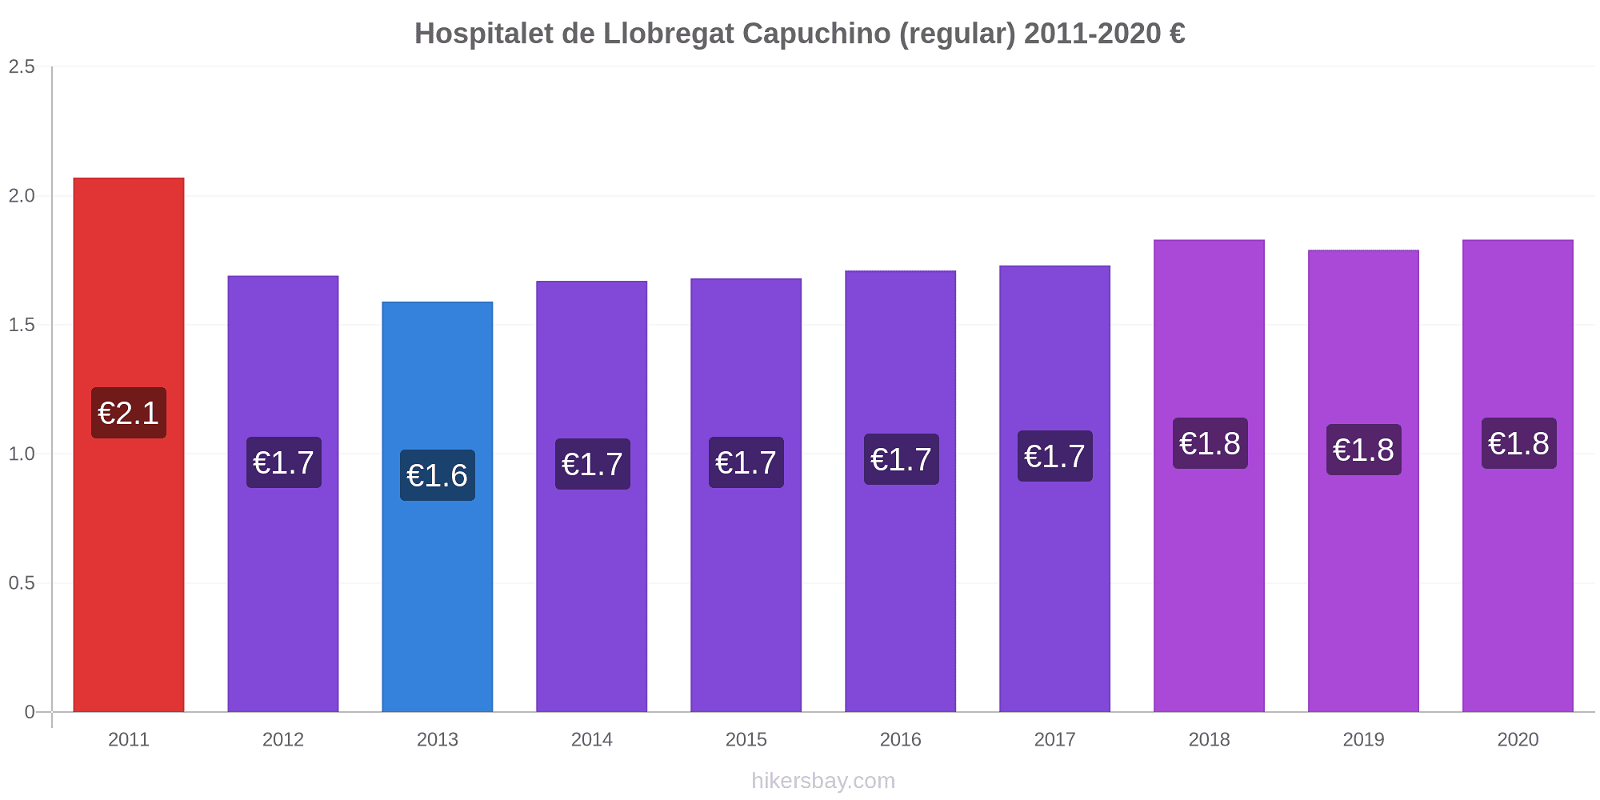 Hospitalet de Llobregat cambios de precios Capuchino (regular) hikersbay.com